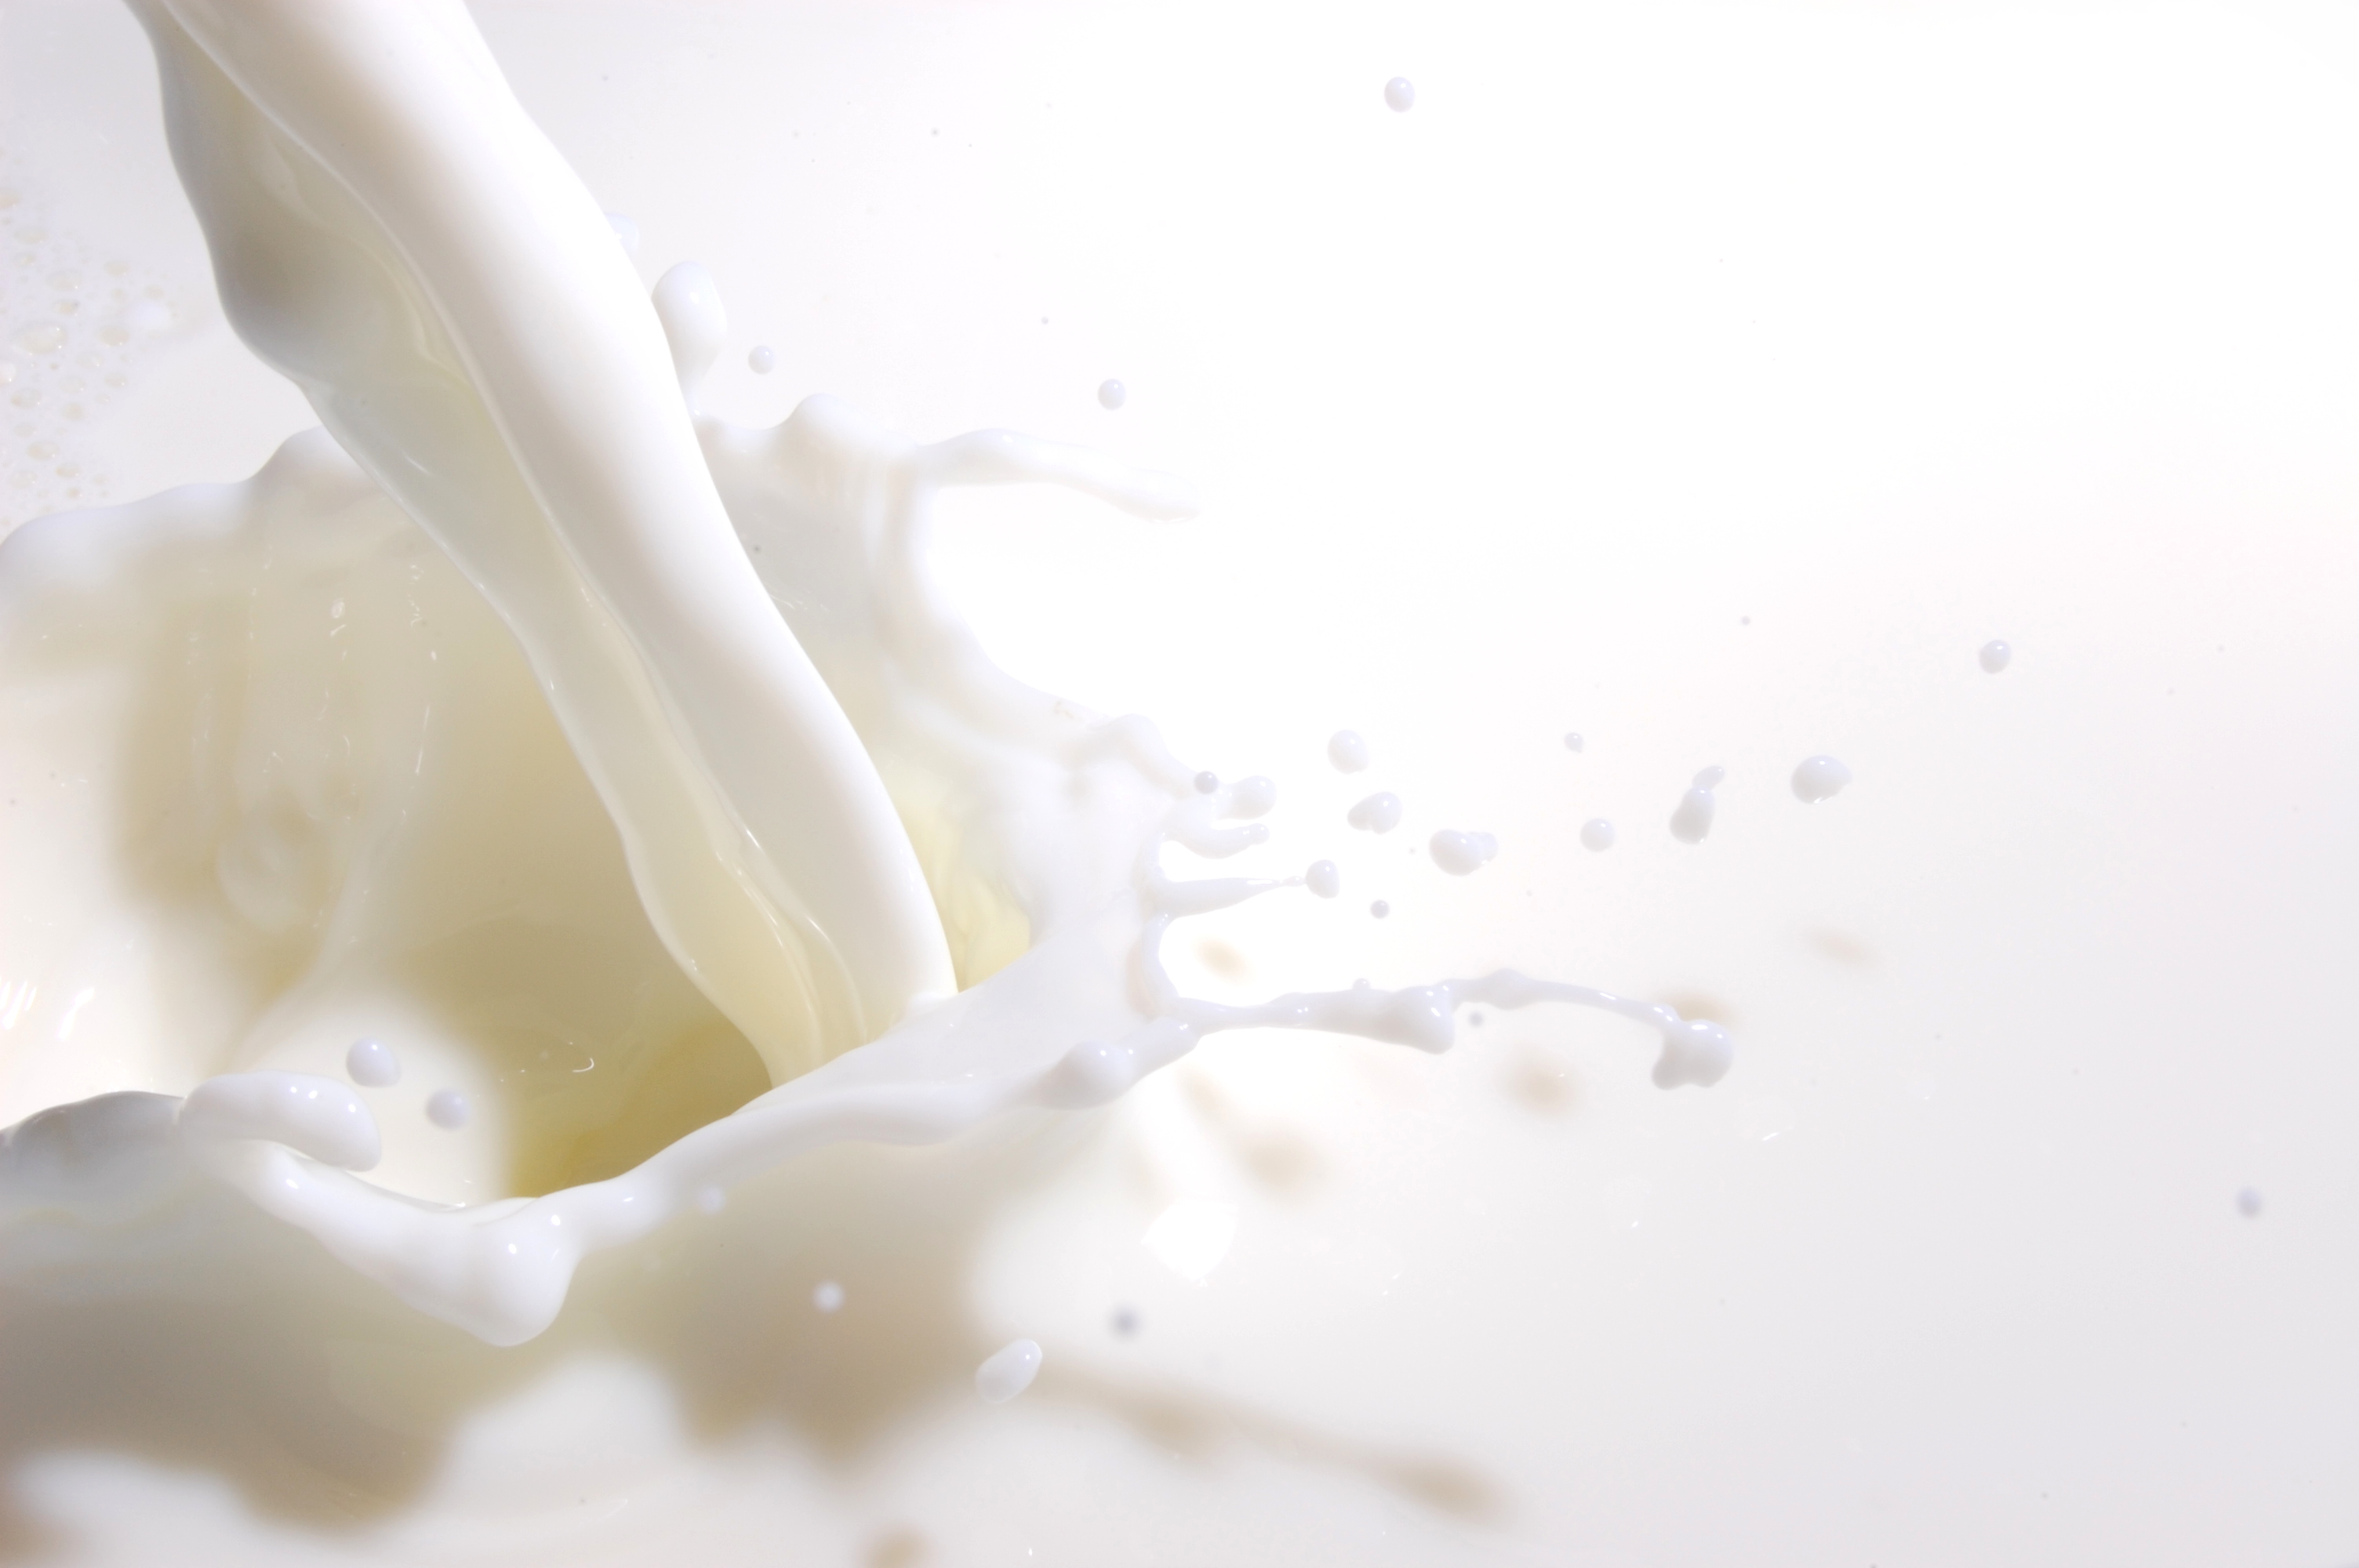 Los precios internacionales de la leche tocan máximos históricos